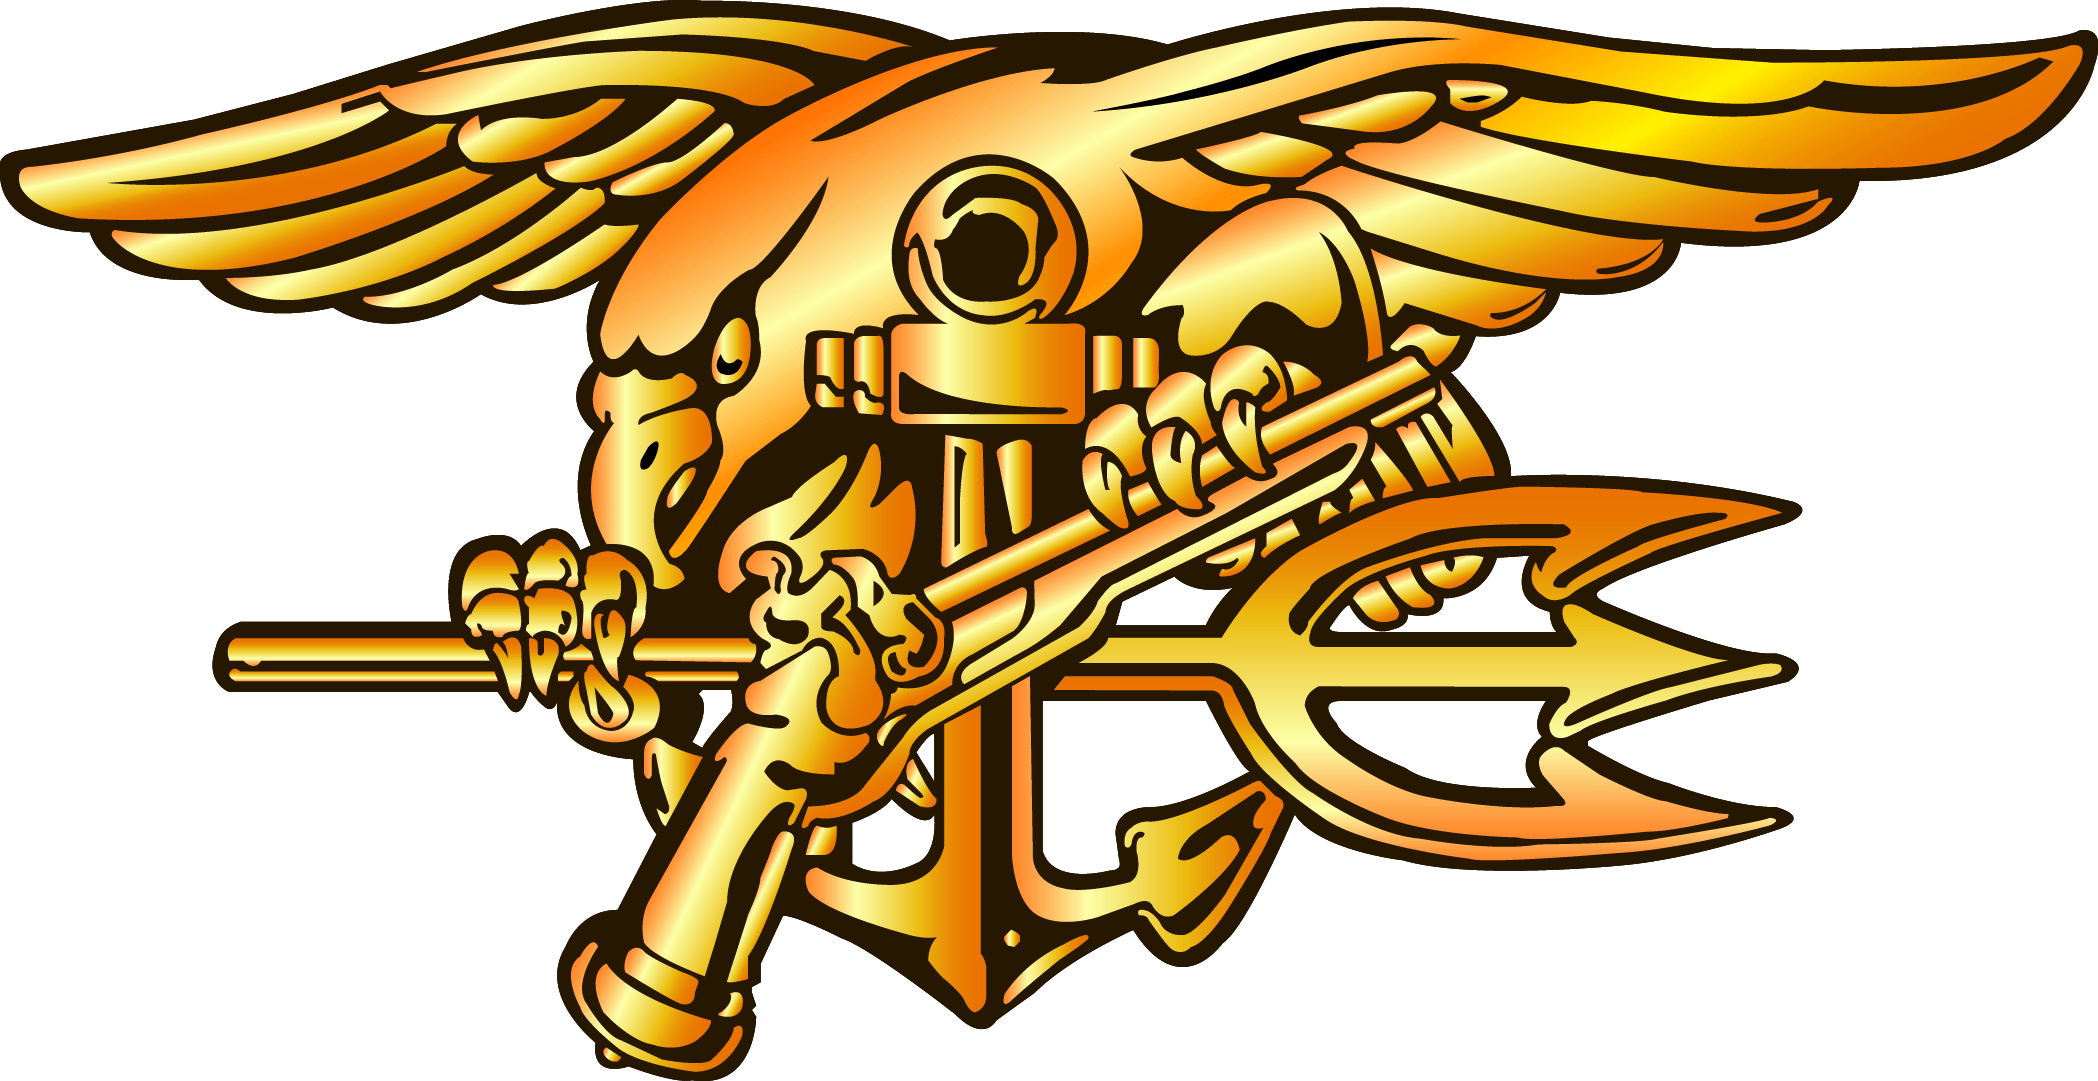 Navy Trident Logo - Navy SEAL Trident Logo N2 free image